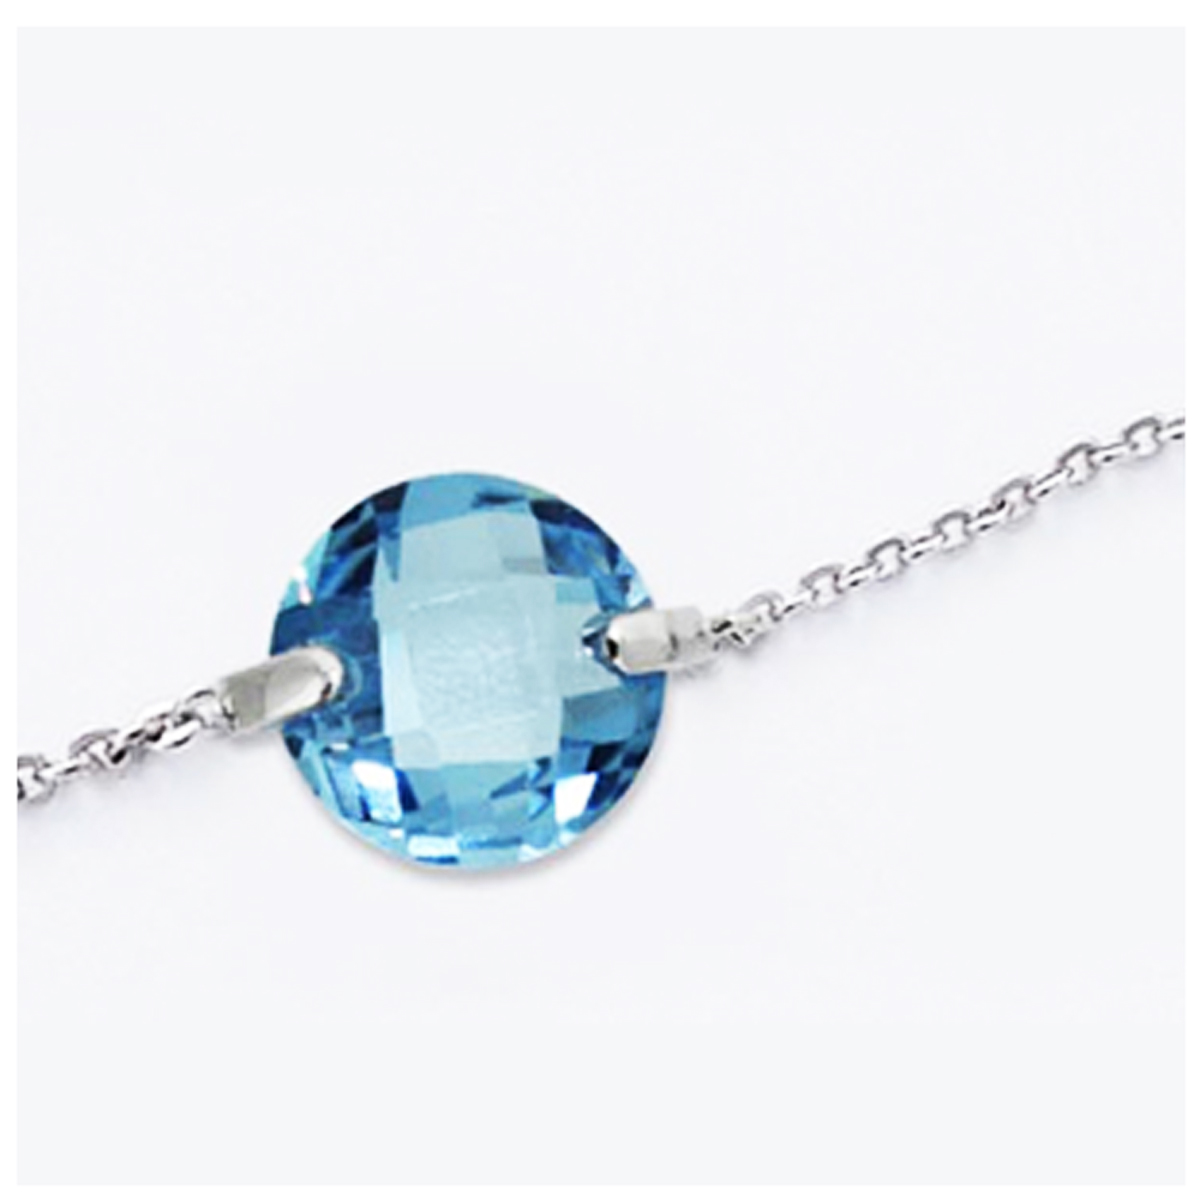 Bracelet Argent \'Linda\' turquoise argenté (rhodié) - 10 mm - [L0474]